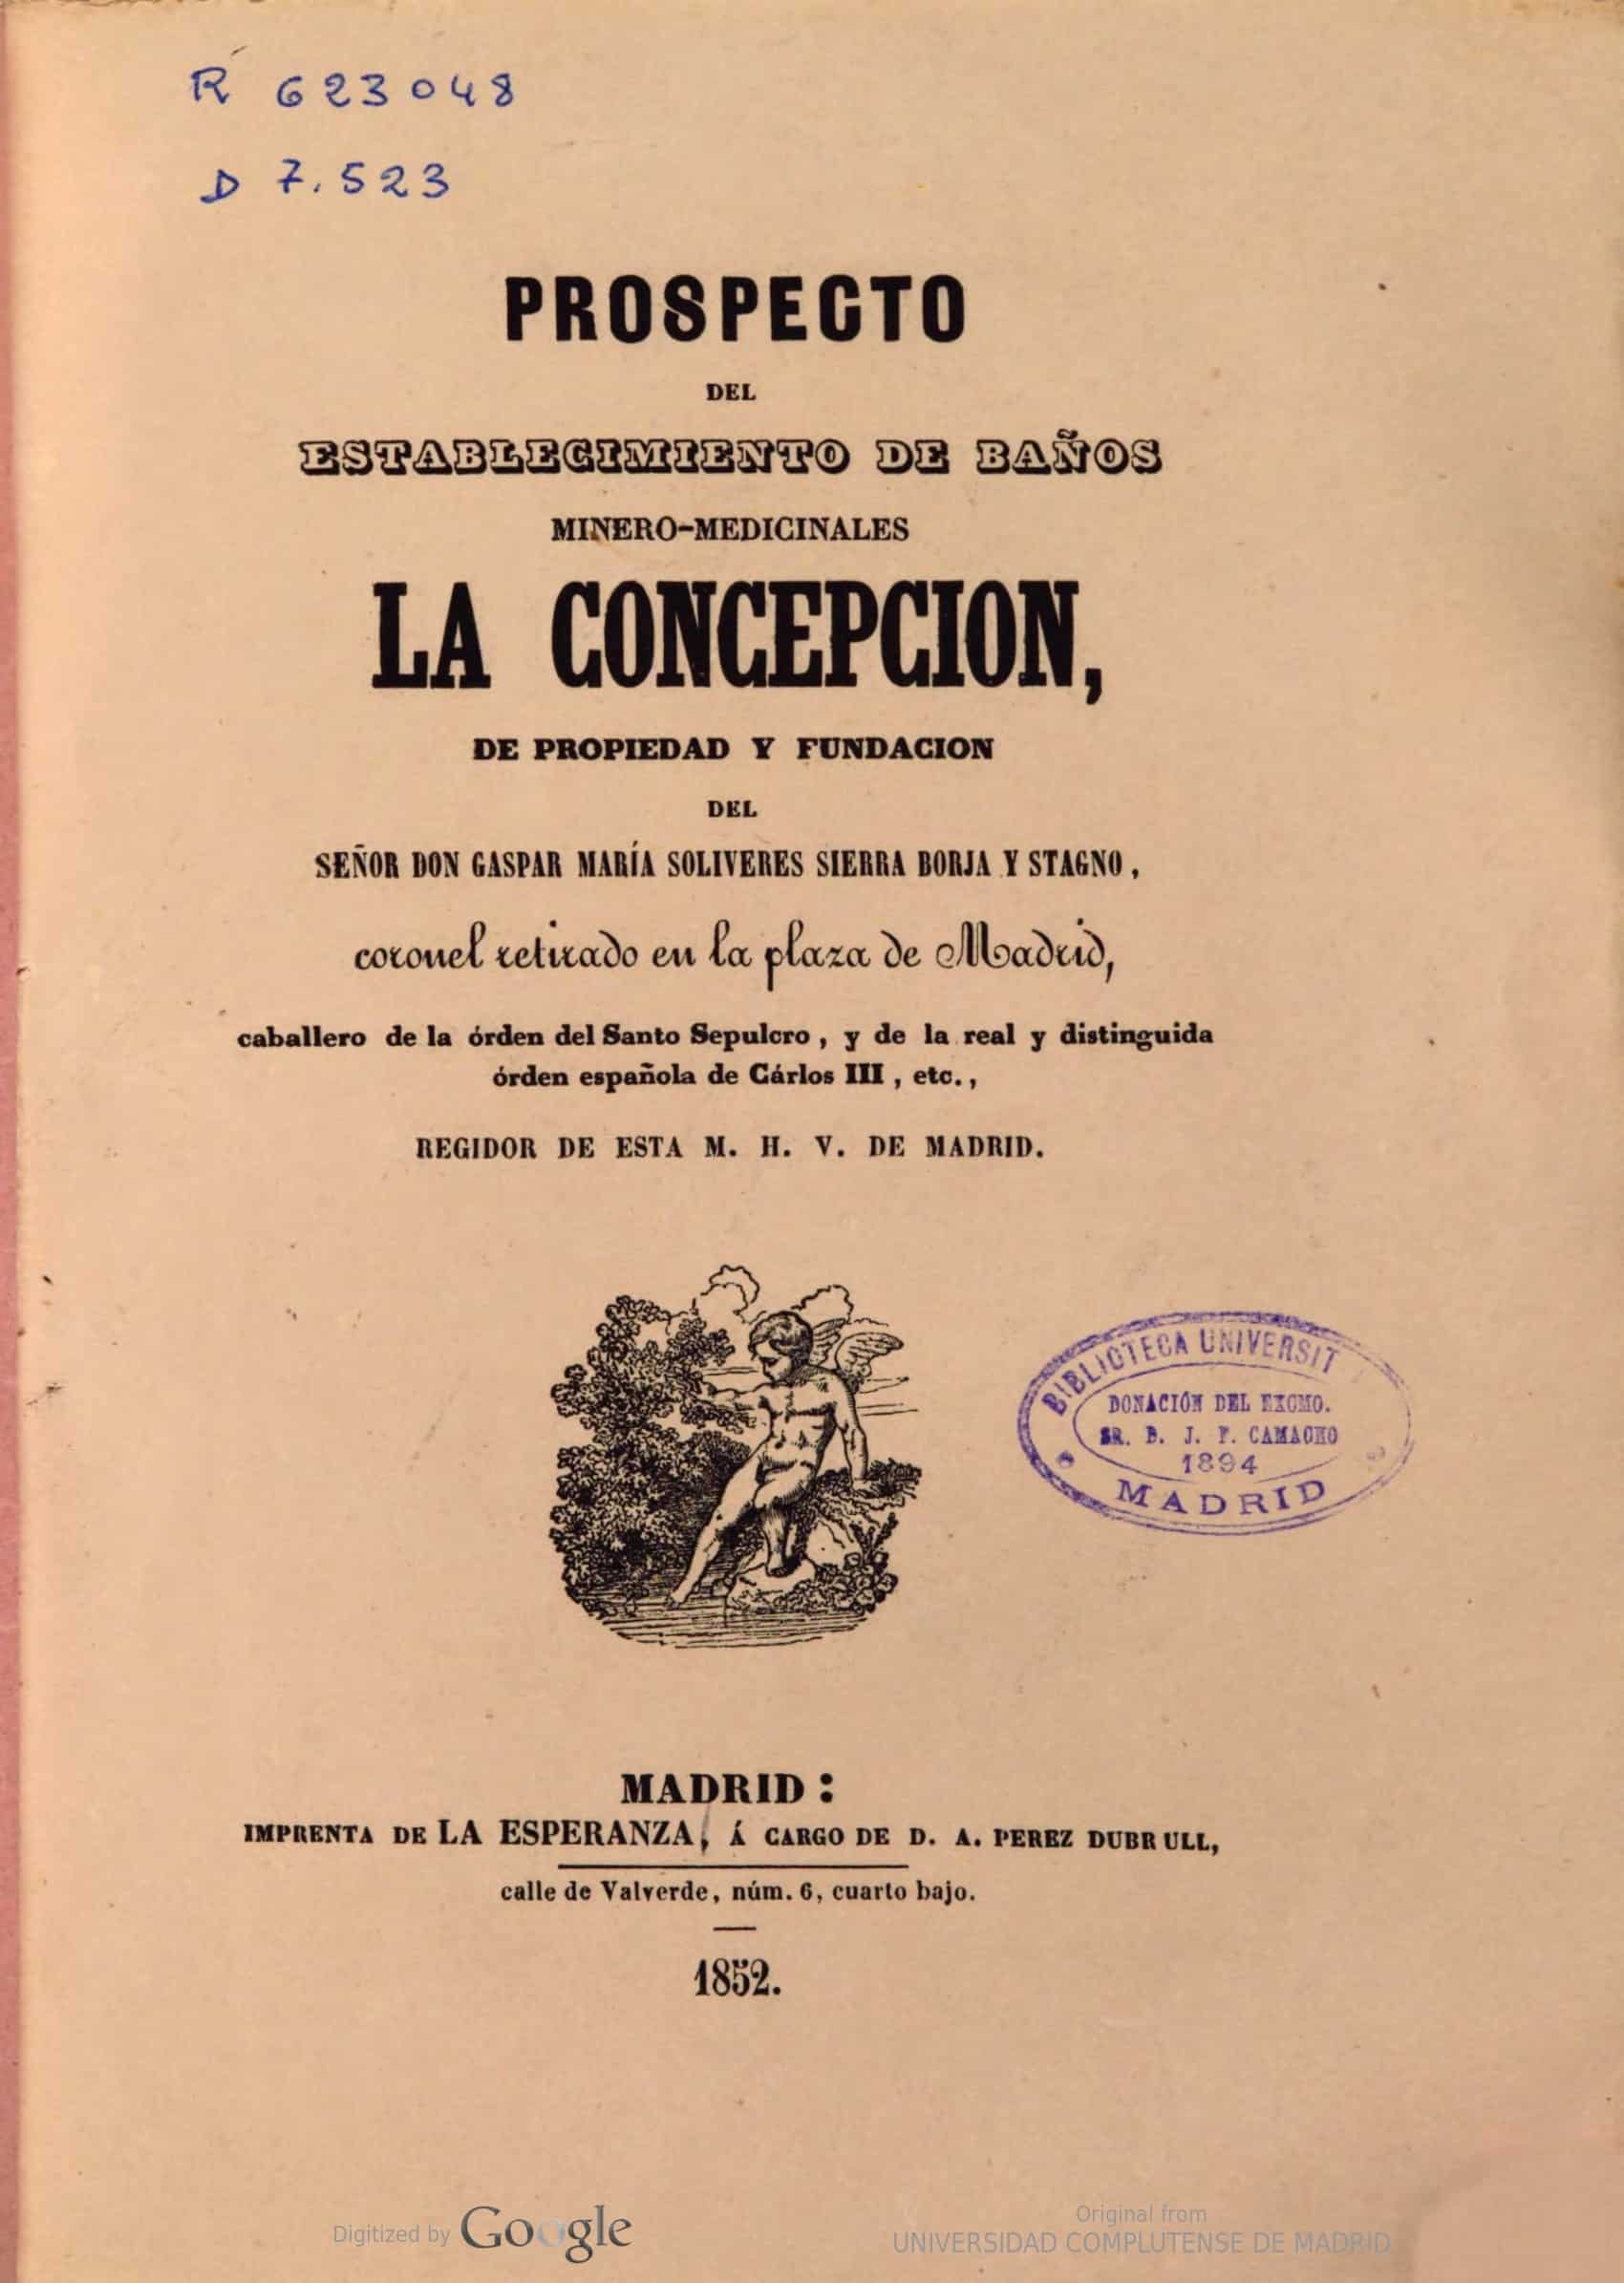 Prospecto del establecimiento de baños minero-medicinales La Concepción, de propiedad y fundación del señor don Gaspar María Solivéres